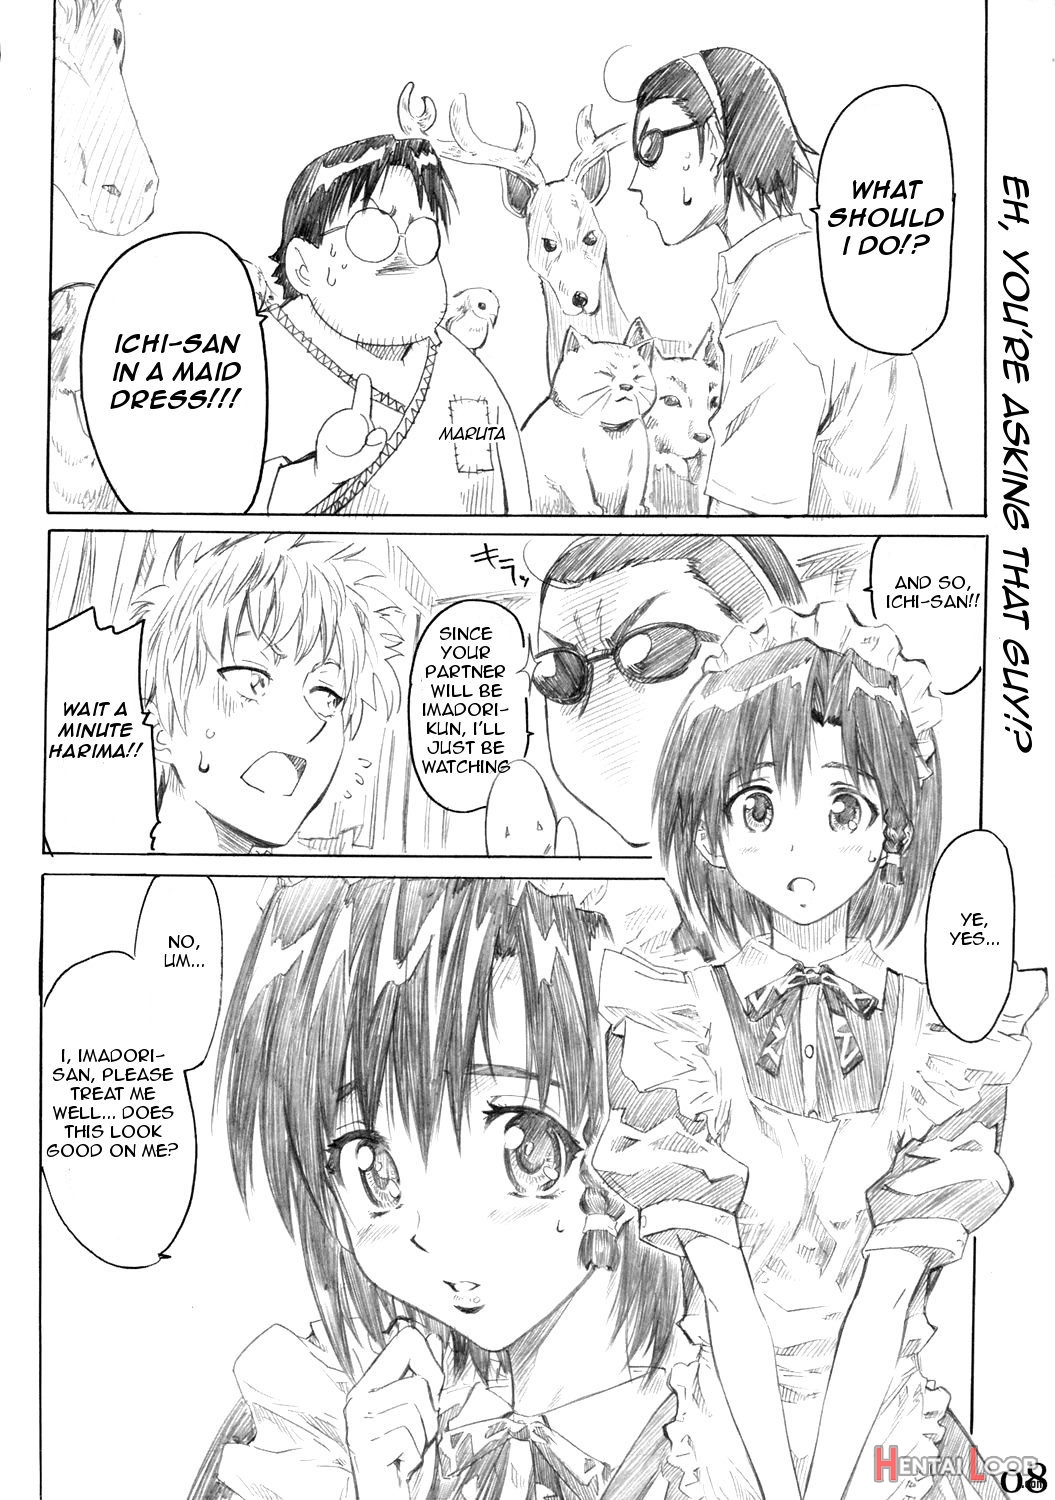 Harima No Manga-michi Vol. 3 page 7